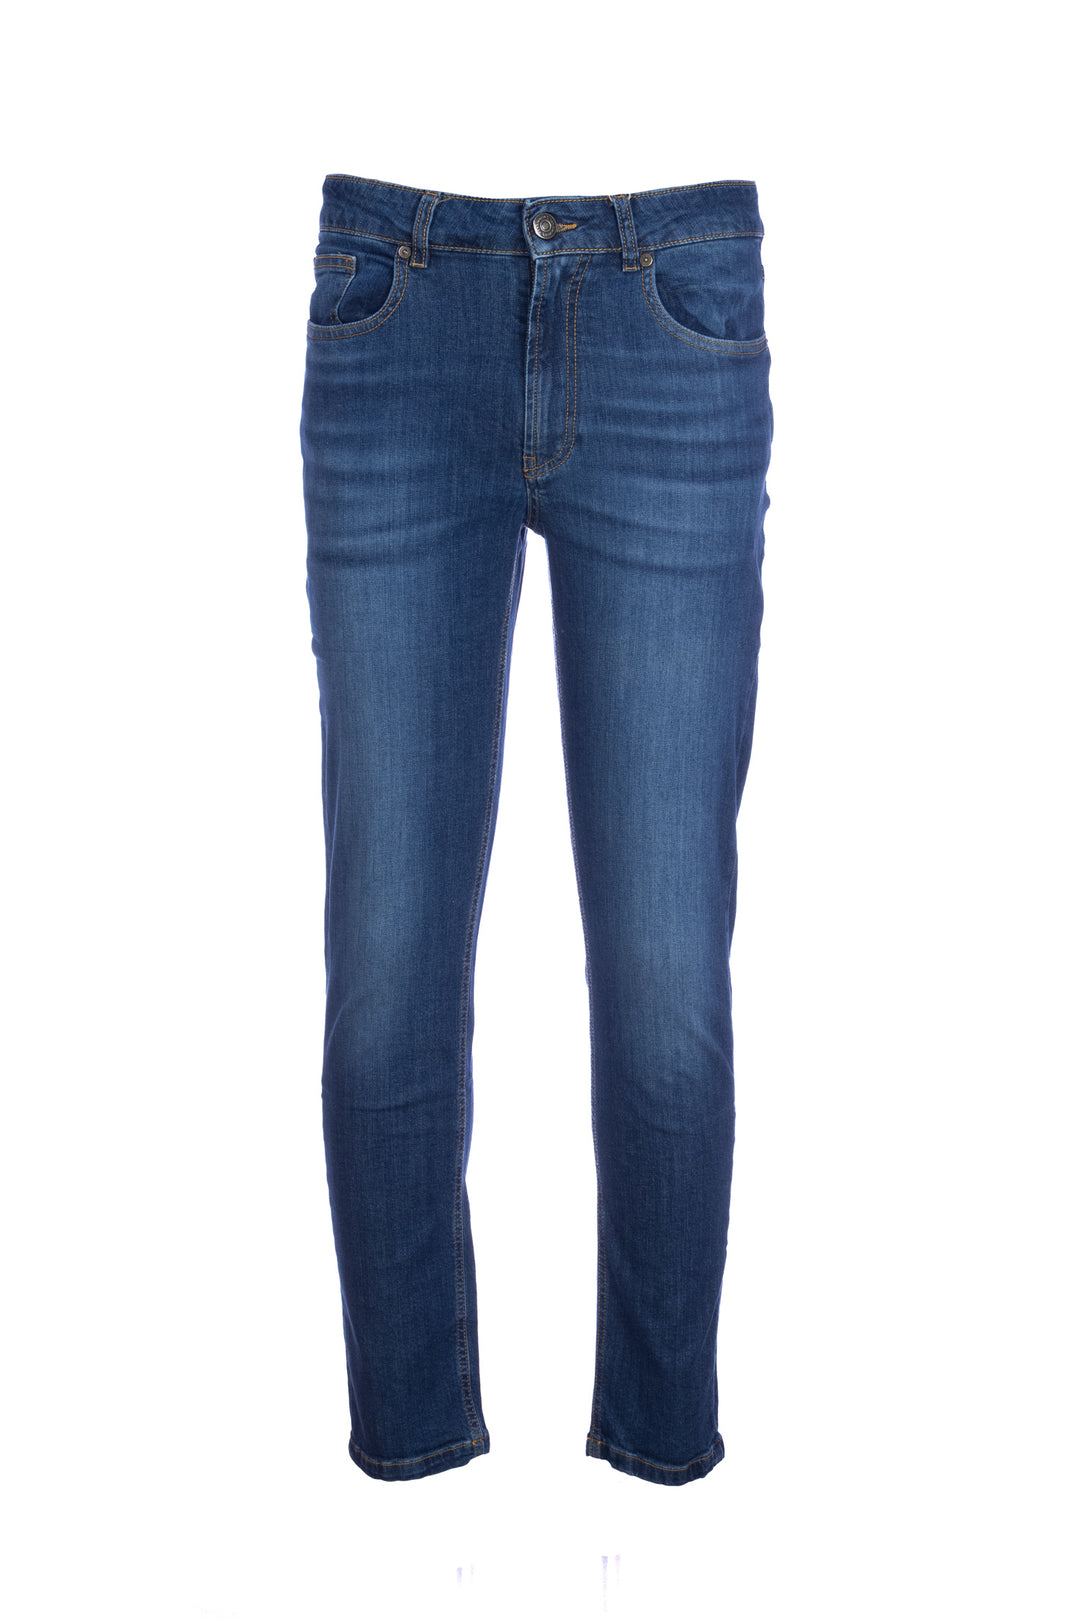 YAN SIMMON Jeans 5 tasche in cotone stretch lavaggio medio - Mancinelli 1954